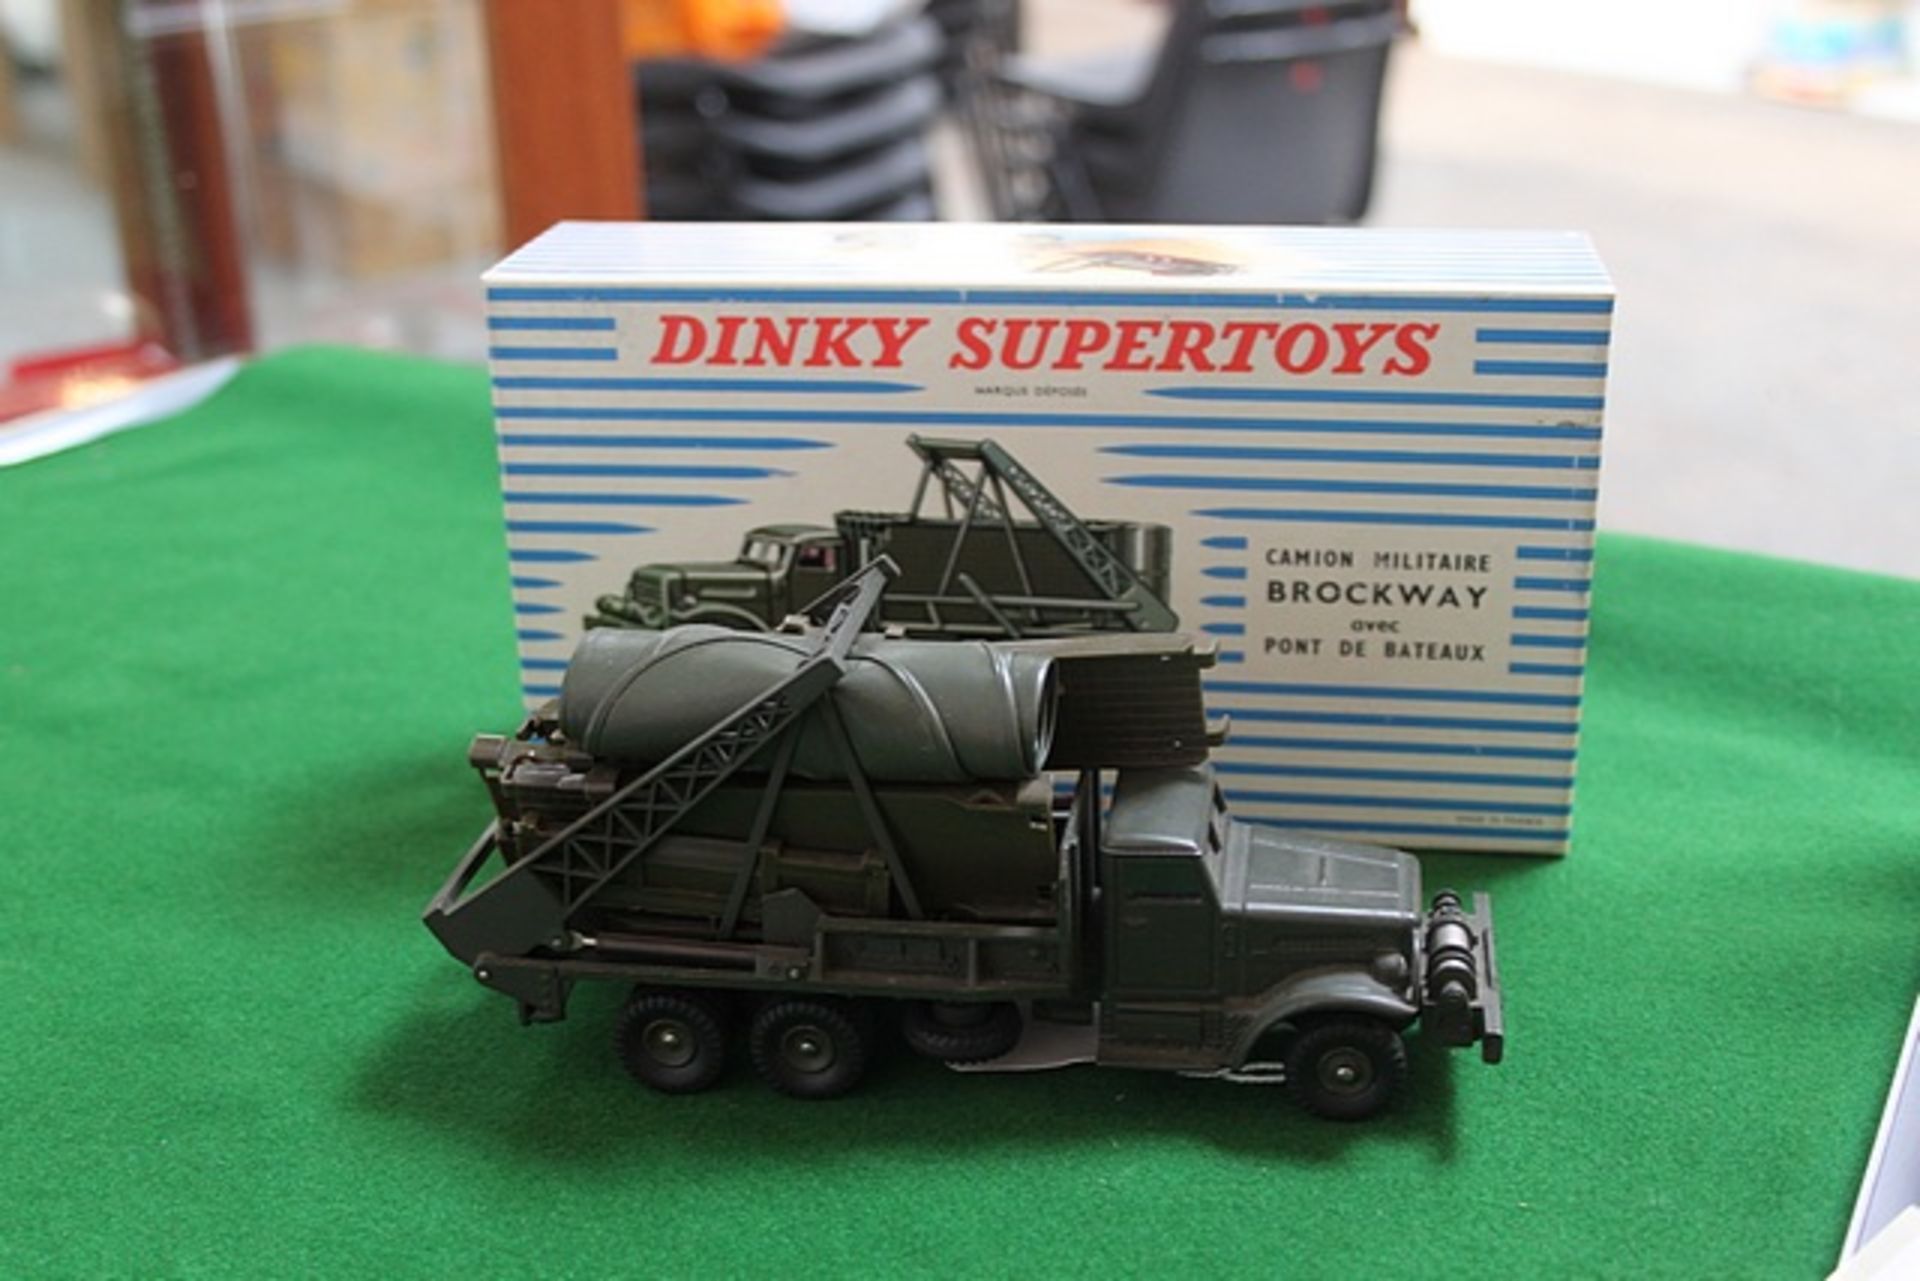 Dinky Toys Diecast #884 Camion Militaire Brockway Avec Pont De Bateaux Complete With Box